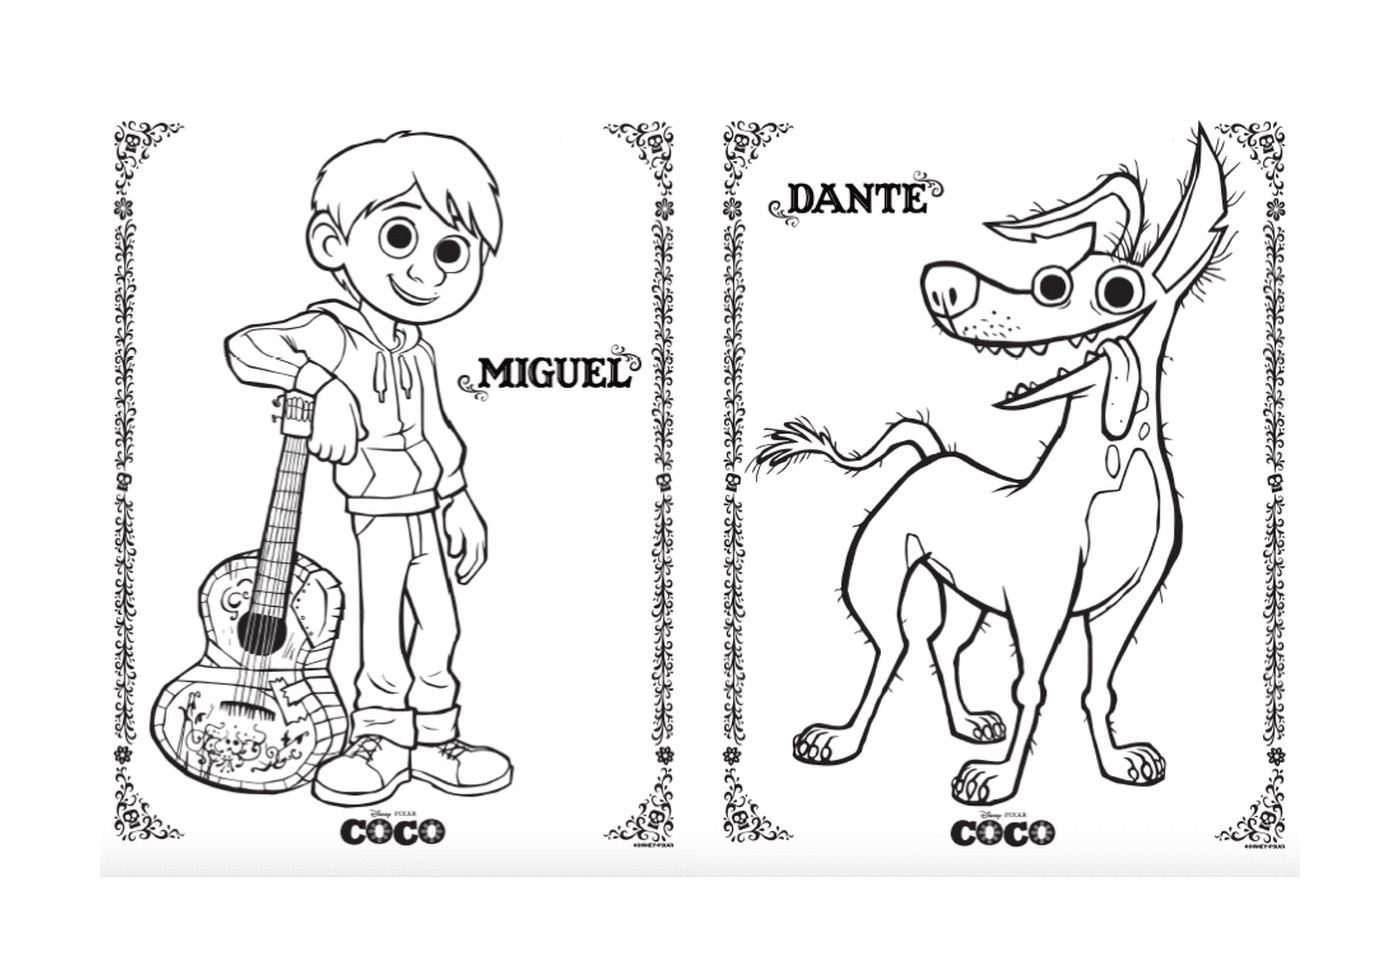  Miguel Dante the Dog, in Disney Coco Pixar(迪士尼可可皮克斯) 